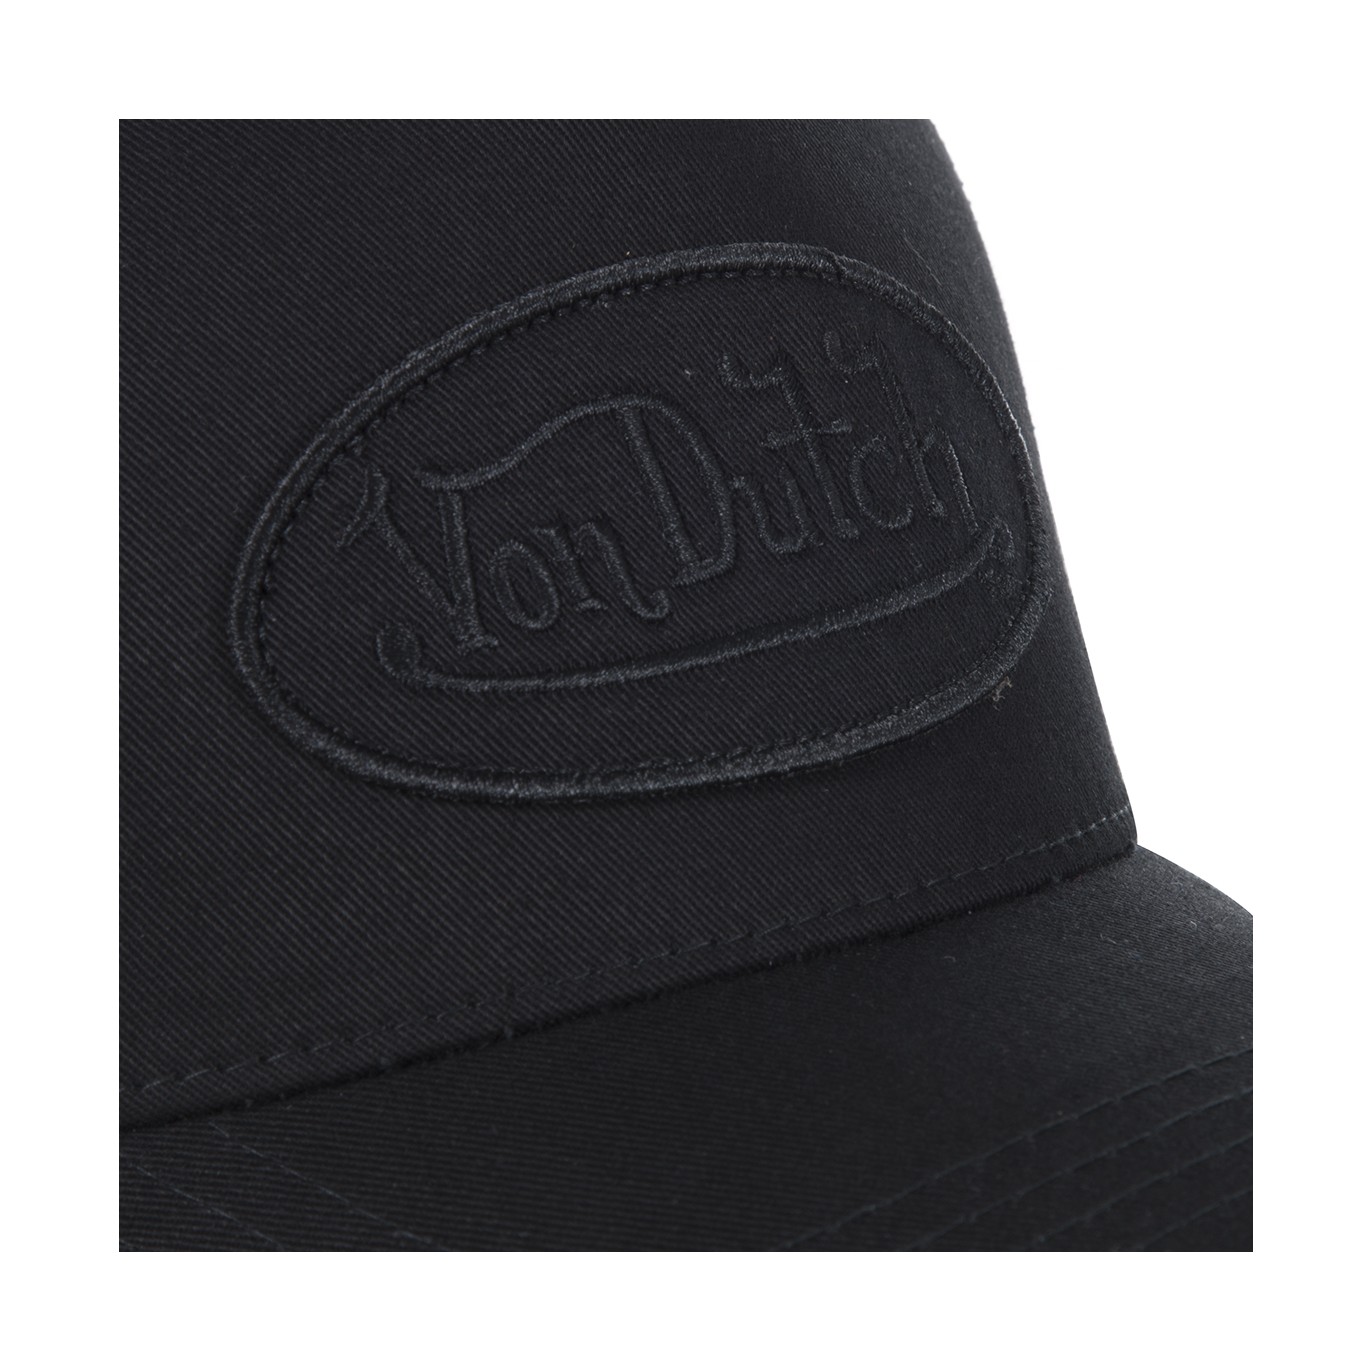 Black Von Dutch Lofb mesh baseball cap - Von Dutch